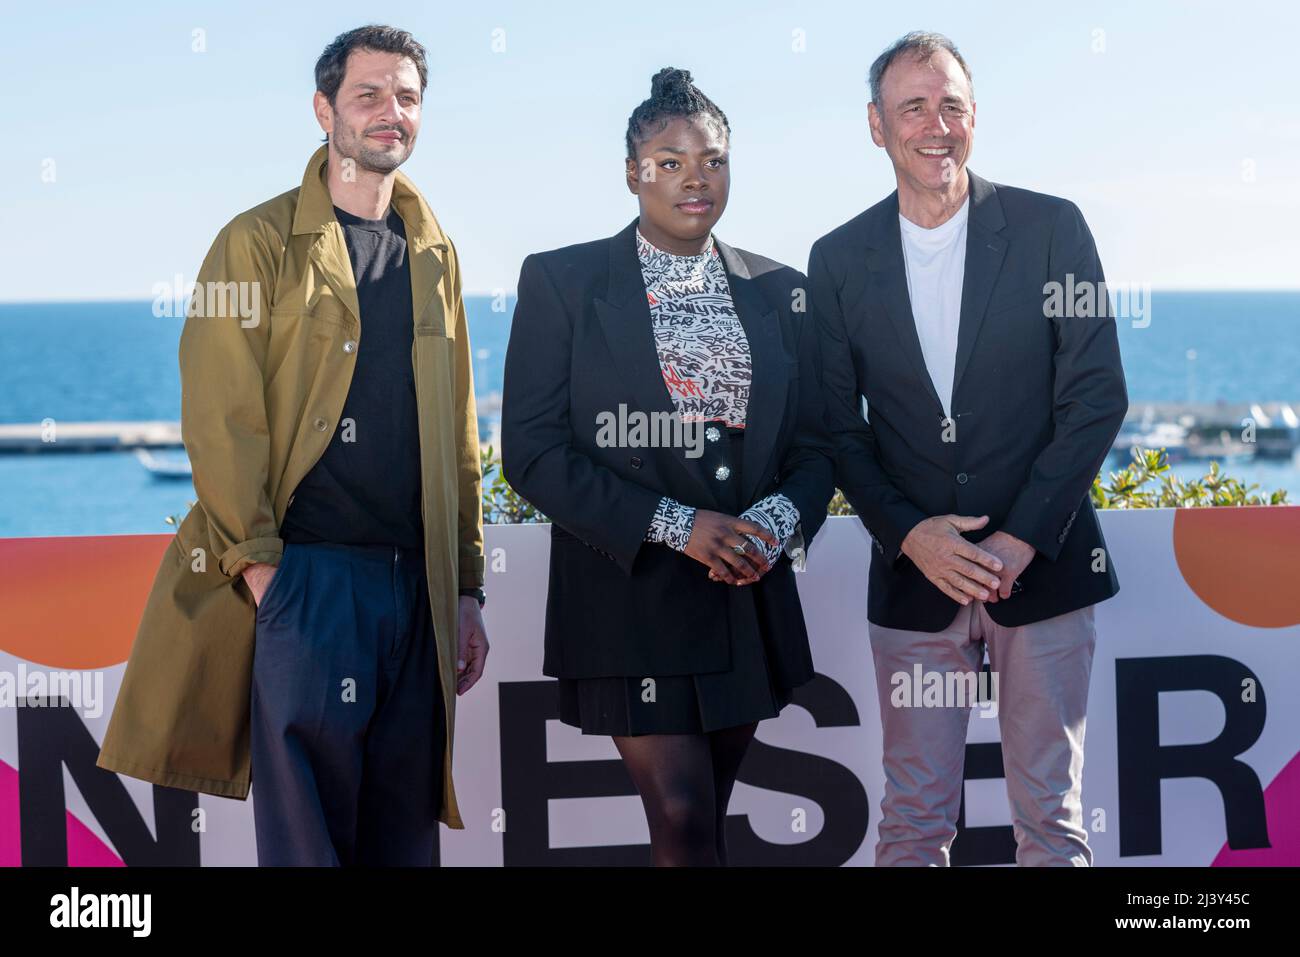 CANNES, FRANKREICH - 05 2022. APRIL, Marc Ruchmann, Chinenye Ezeudu und Anthony Horowitz nehmen an der Fotowand der Kurzfilmjury während des Canneseries Festivals 5. in Cannes, Frankreich, Teil Stockfoto